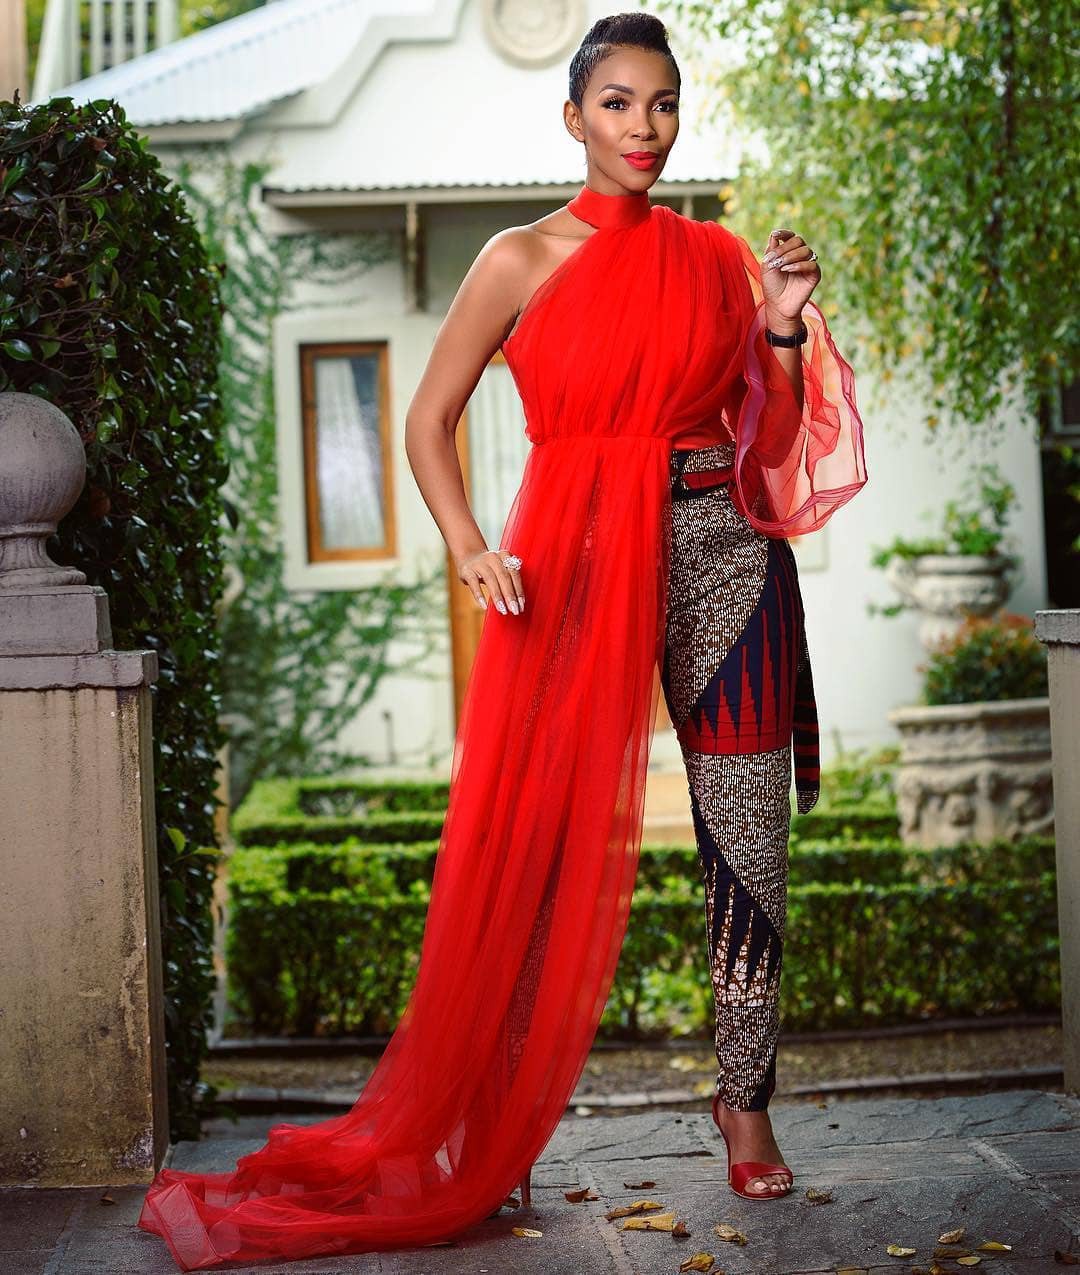 Lindo disfraz colorido Inspo para niñas: moda africana,  Vestidos Ankara,  Atuendos Ankara,  vestidos coloridos,  Ankara Inspiraciones  